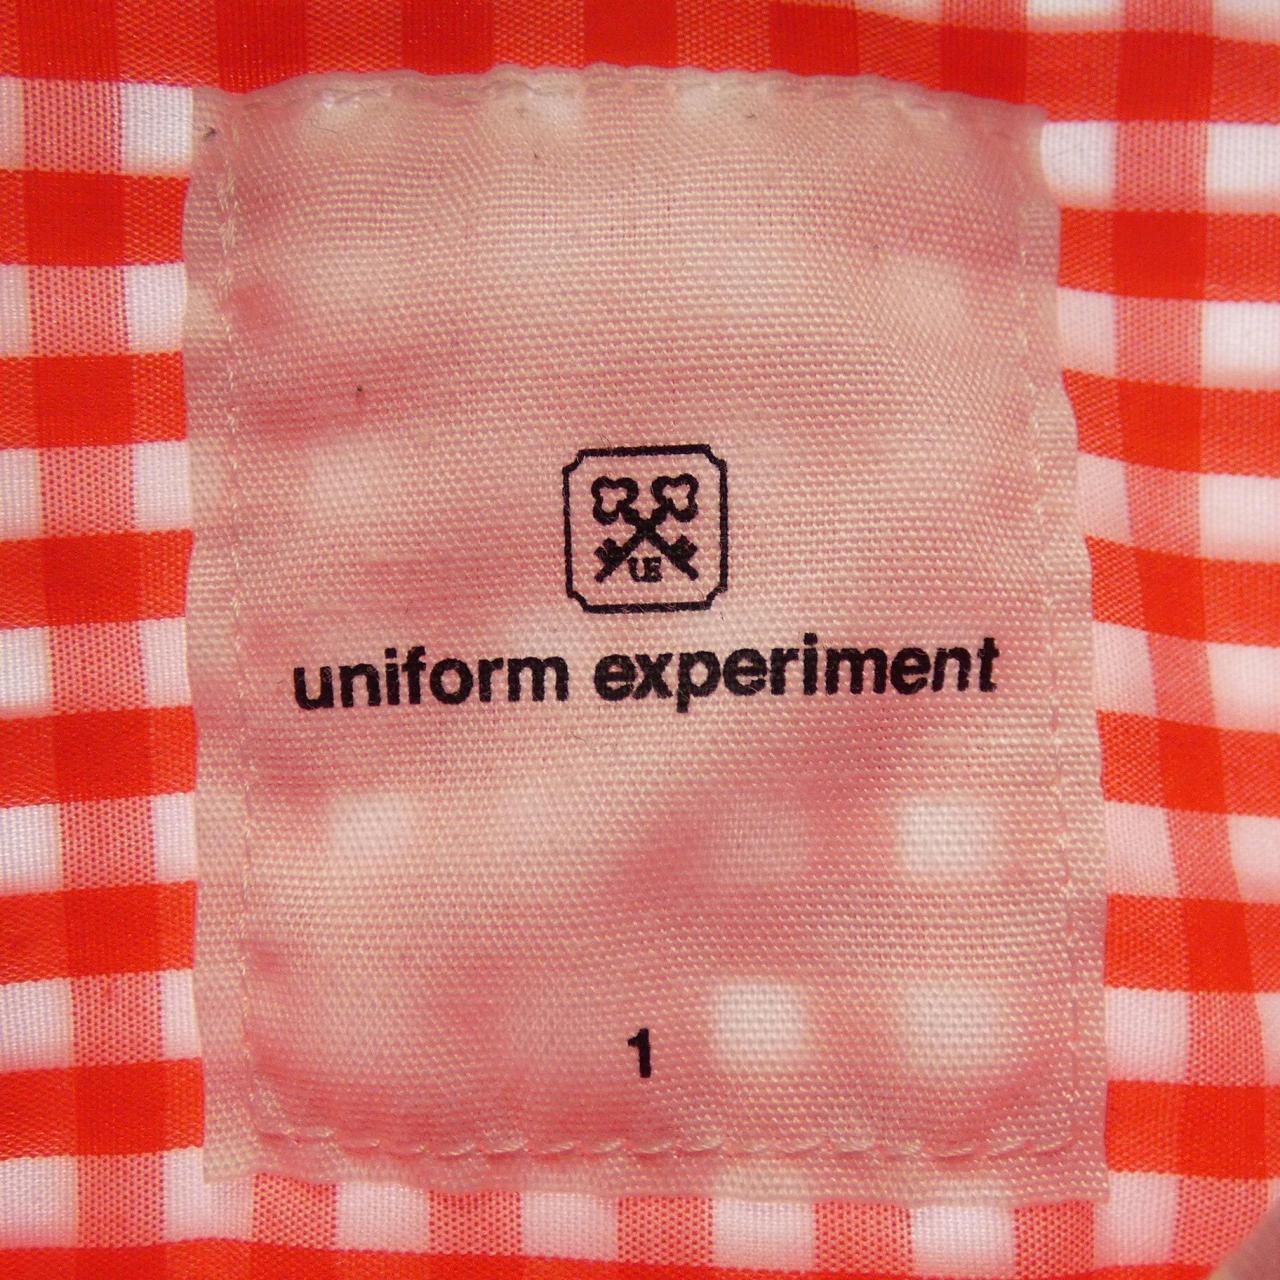 Uniform experiment UNIFORM EXPERIMENT shirt